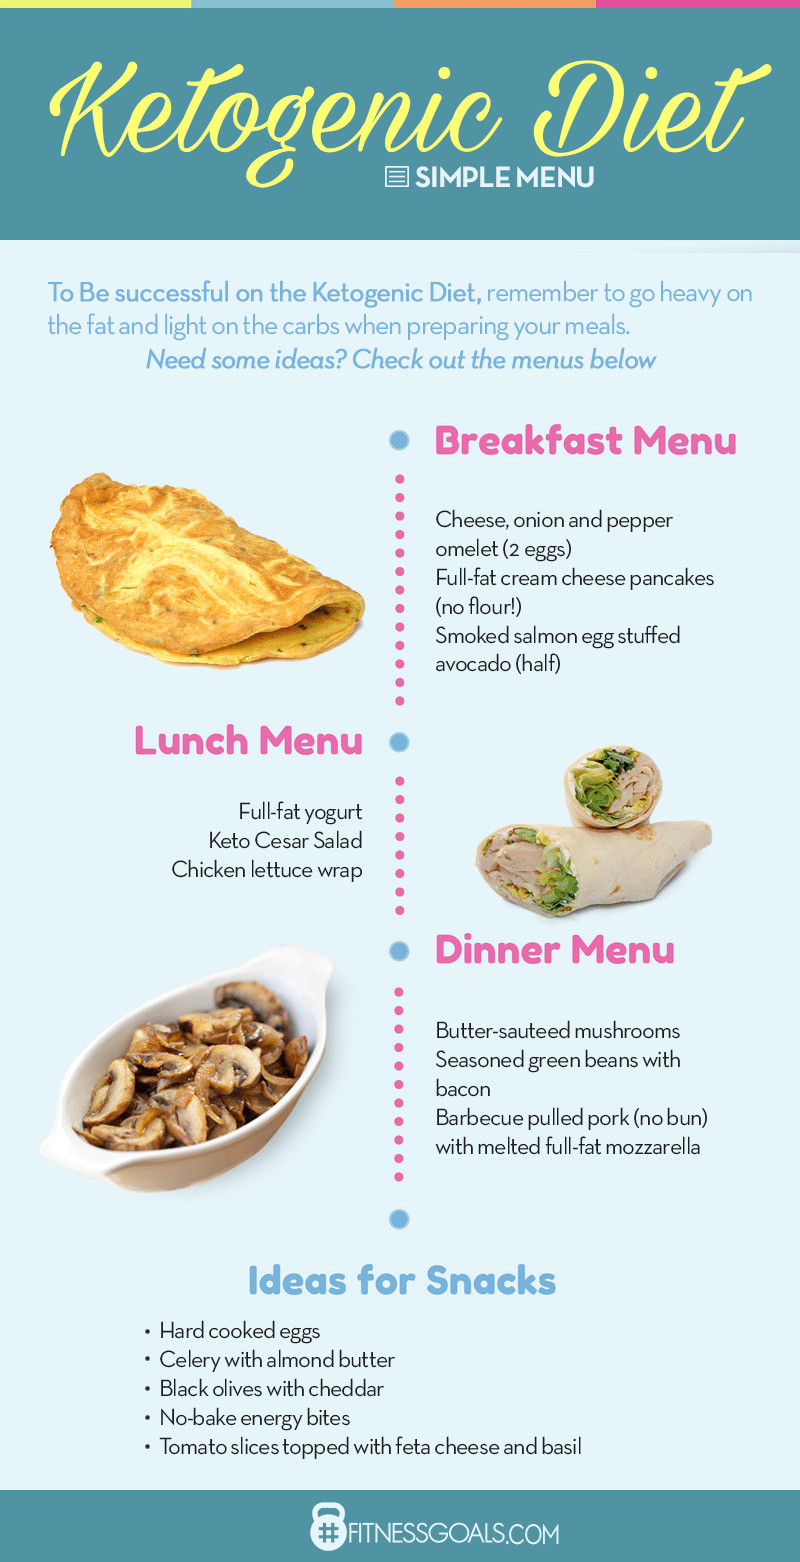 Keto Diet For Beginners Lunch
 Keto Diet Plan The plete Beginner’s Guide